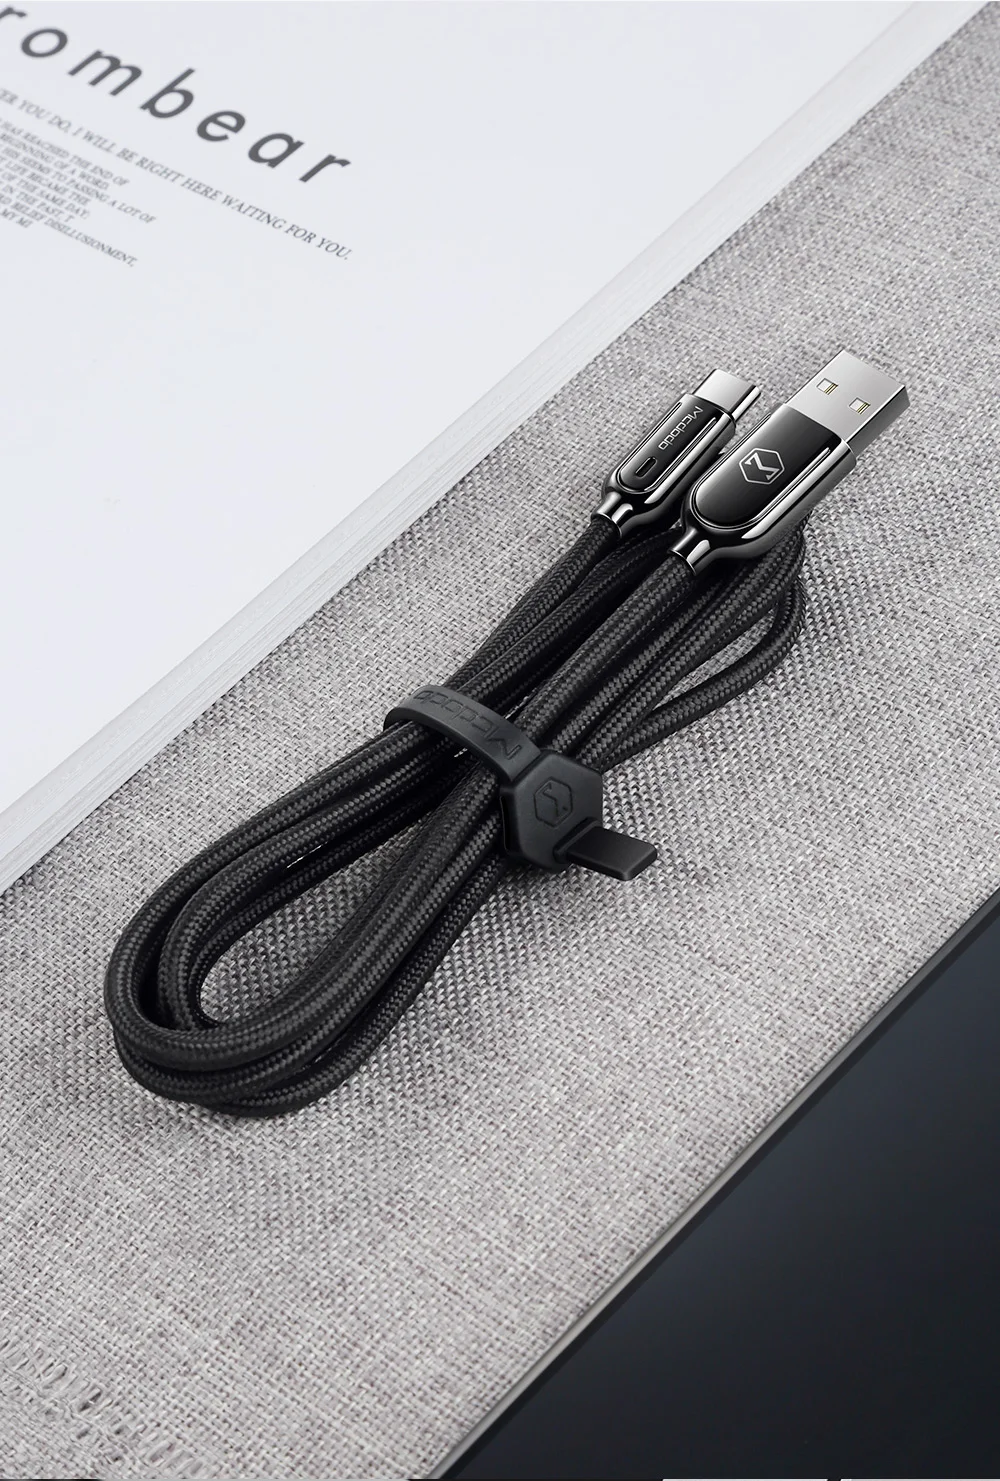 Mcdodo USB кабель type C для samsung Galaxy S10 Plus One Plus QC3.0 Быстрый зарядный телефонный кабель USB C автоматическое отключение зарядного устройства провода